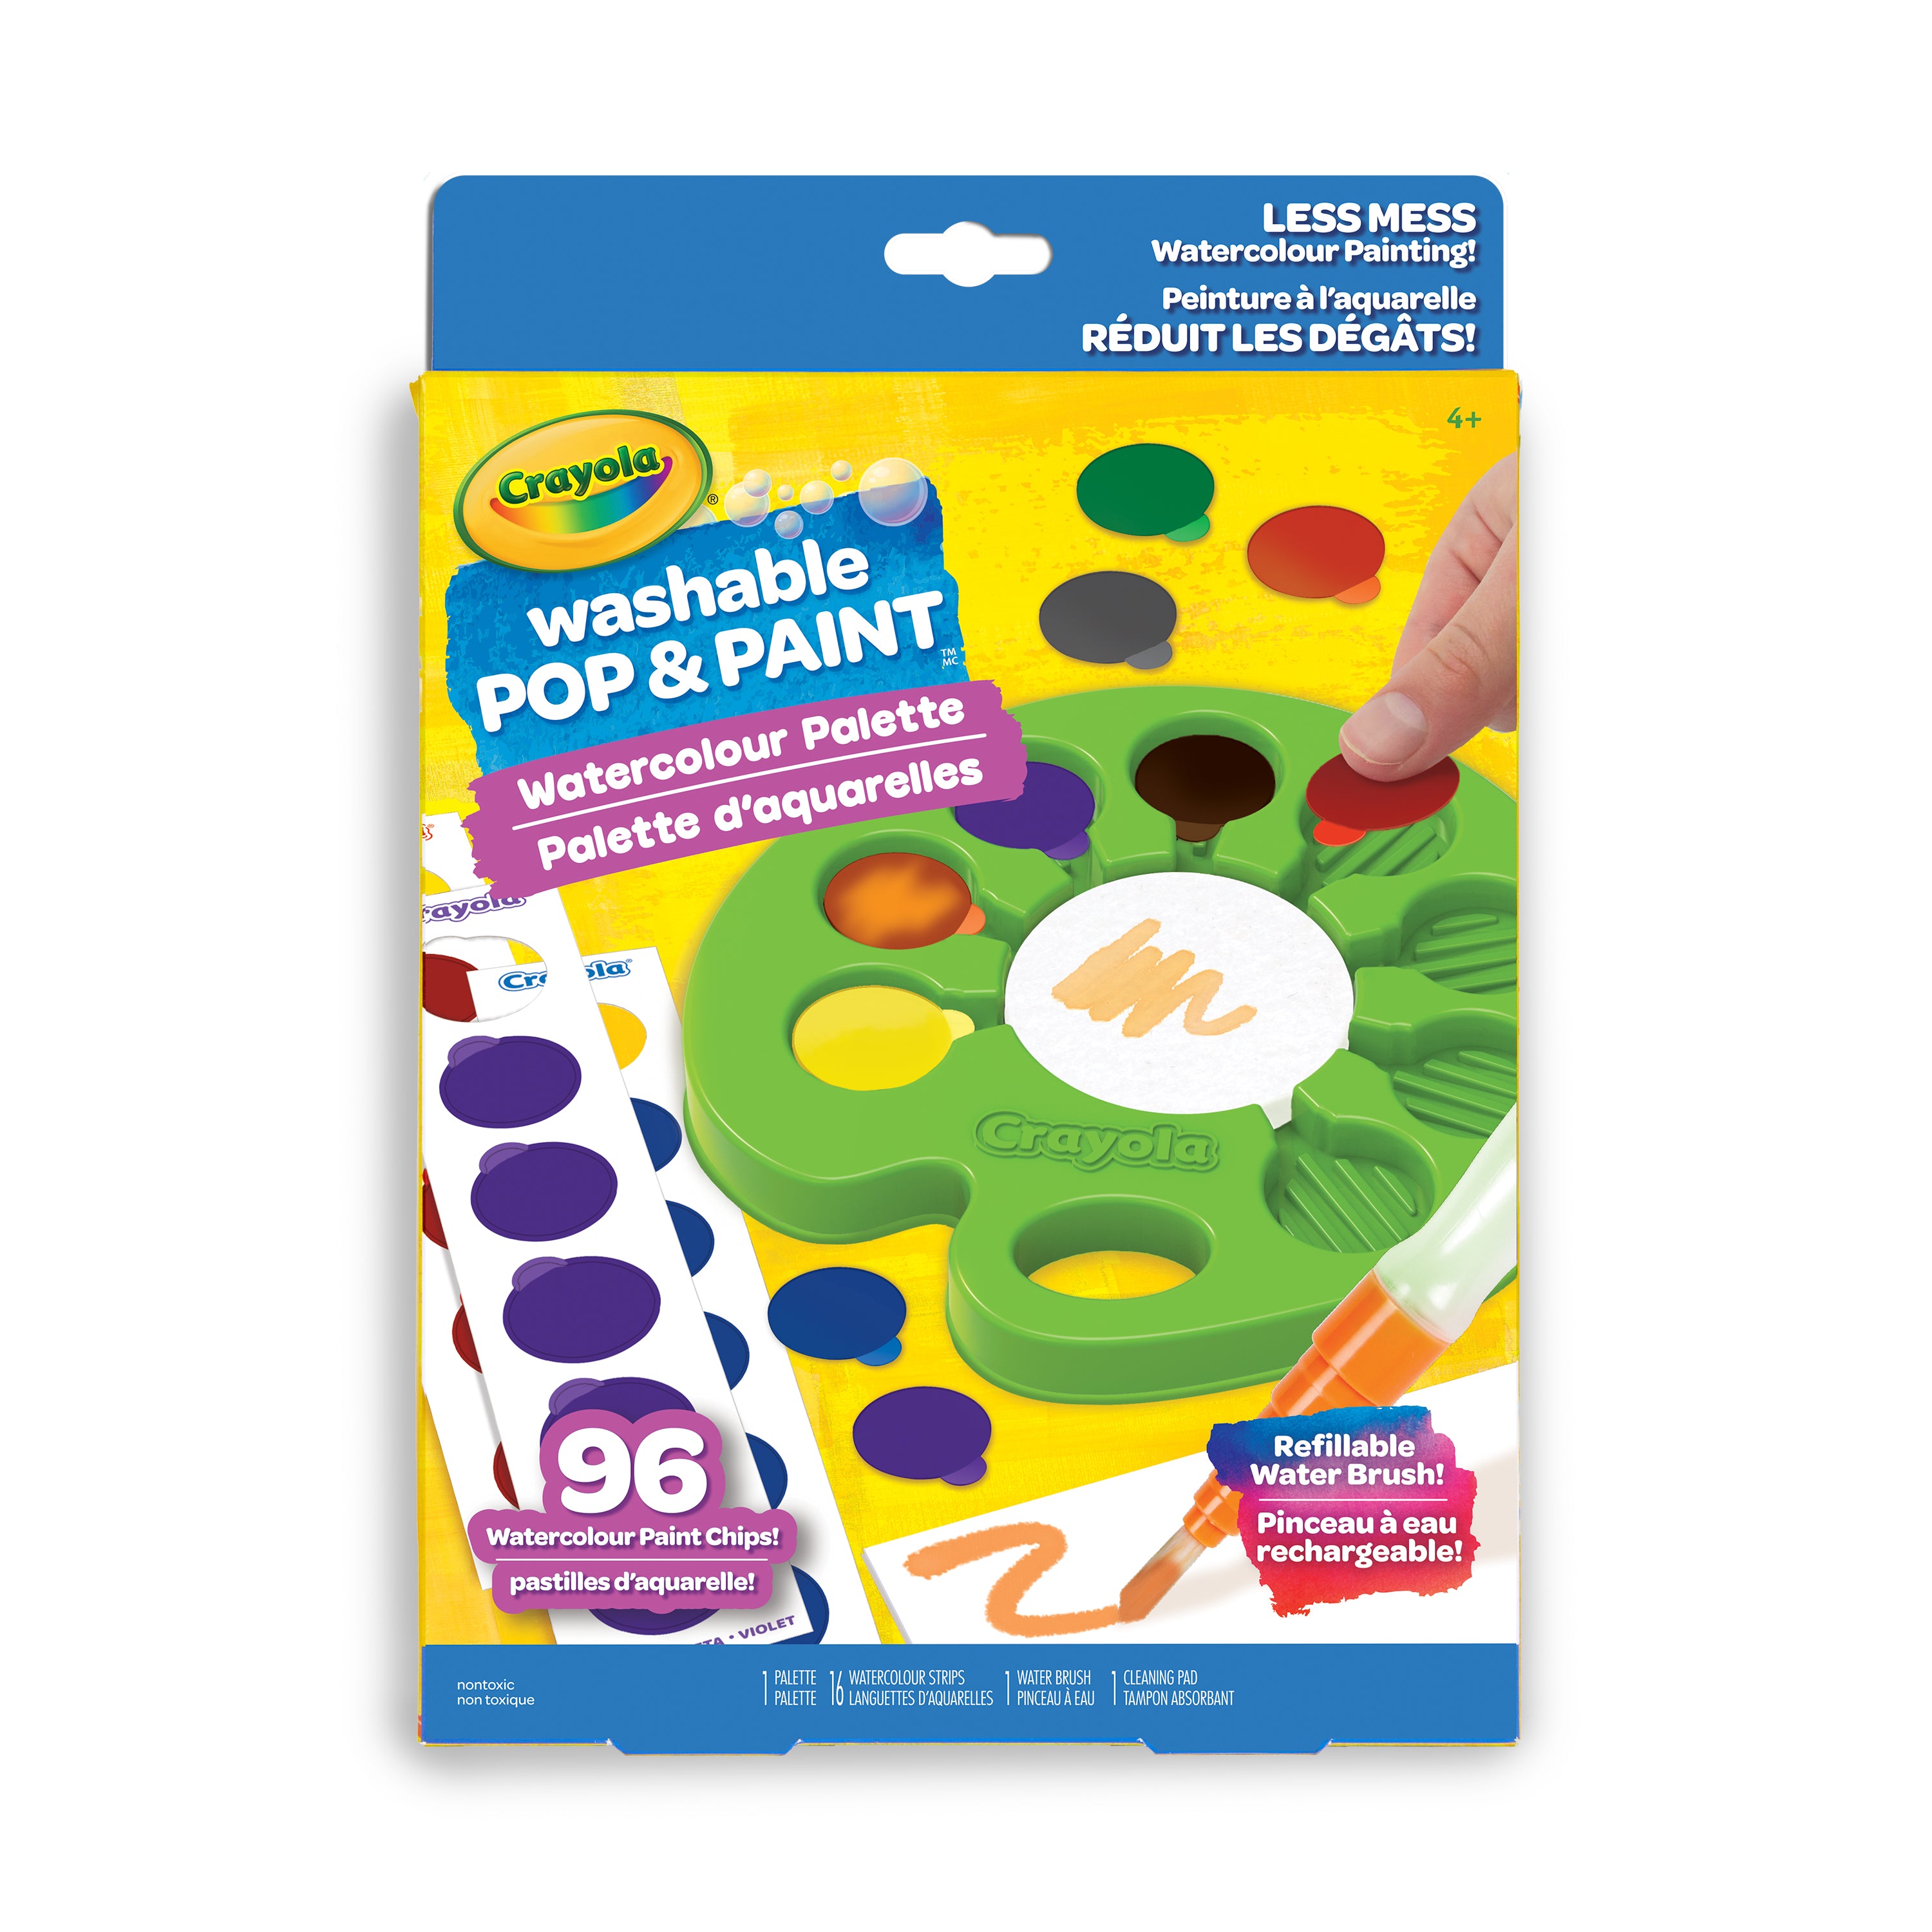 Crayola Washable Kids' Paints - Paint Pot Set of 42